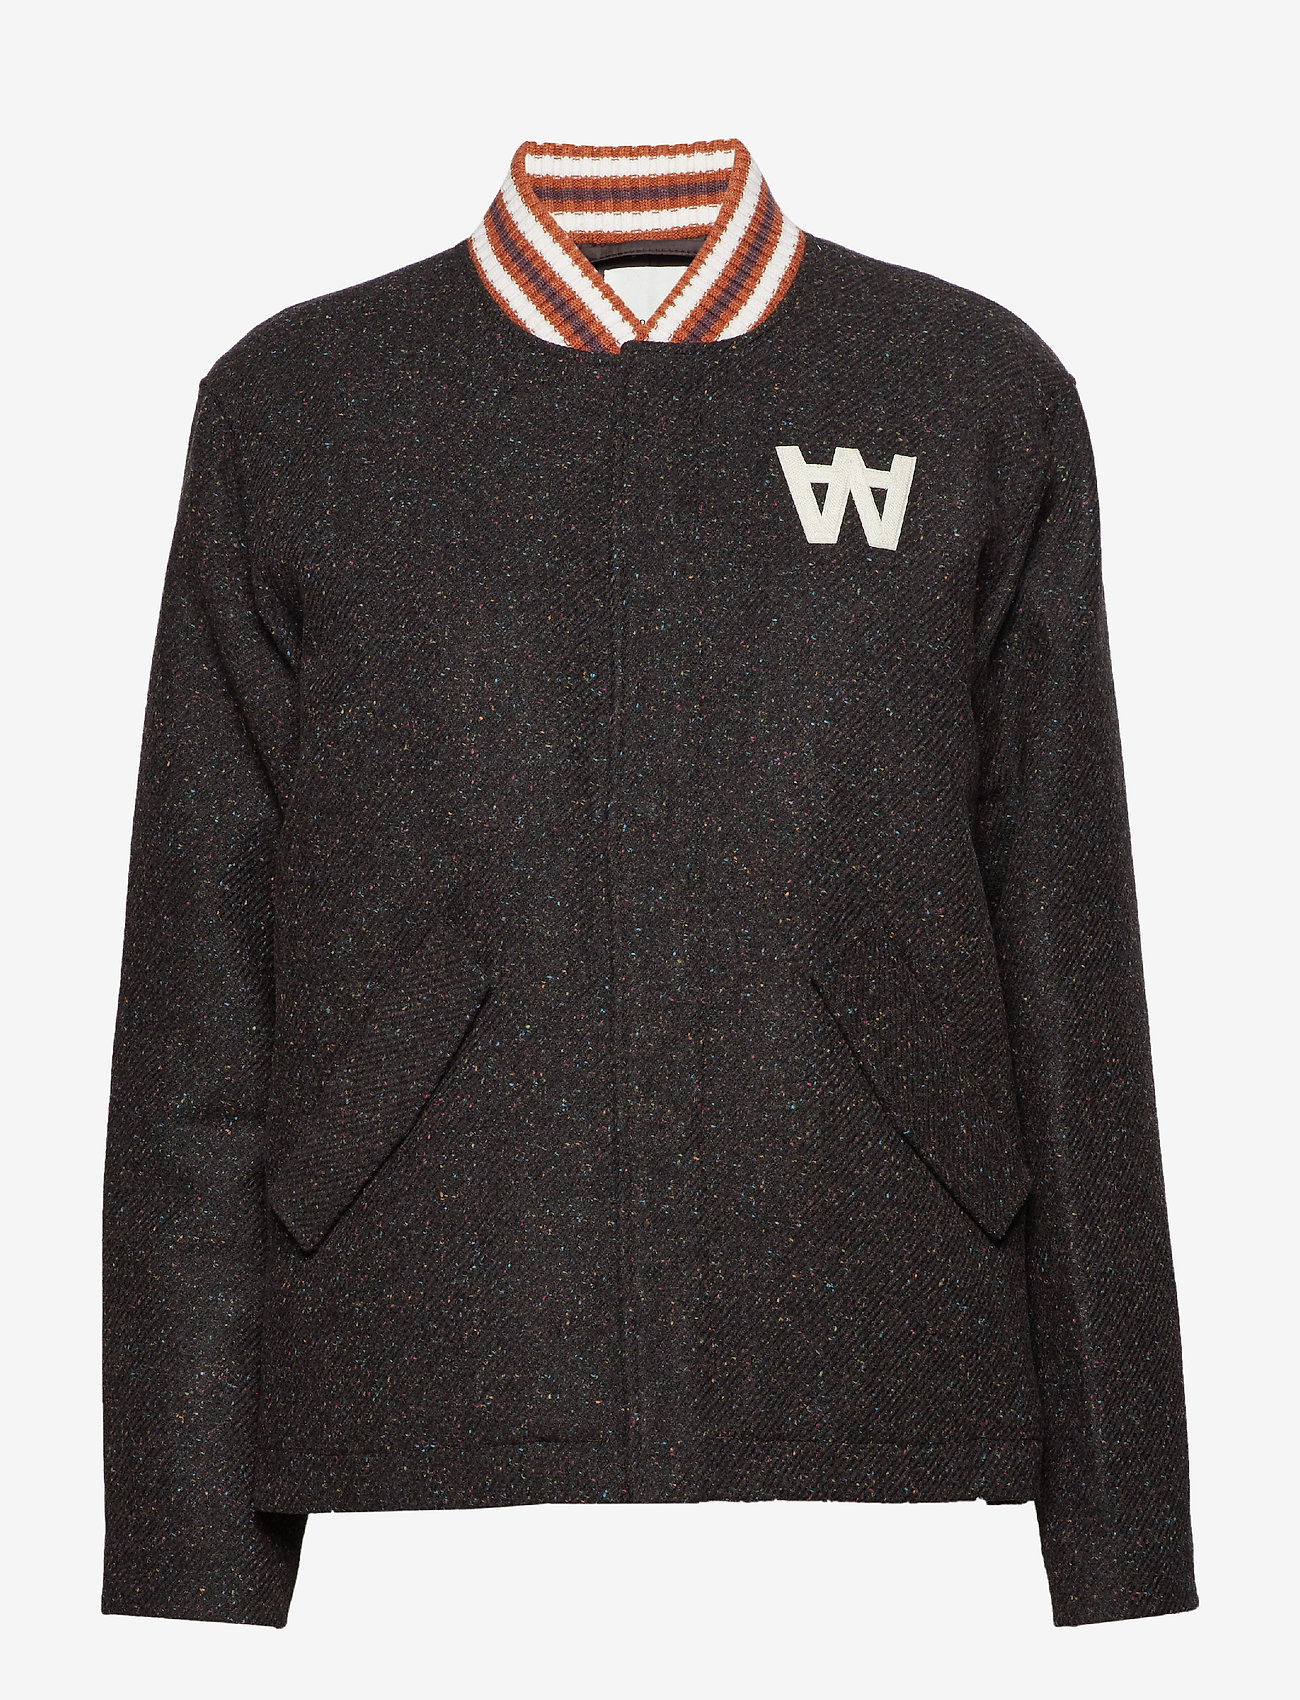 Wood Wood - Anthony jacket - winter jackets - dark multi - 0